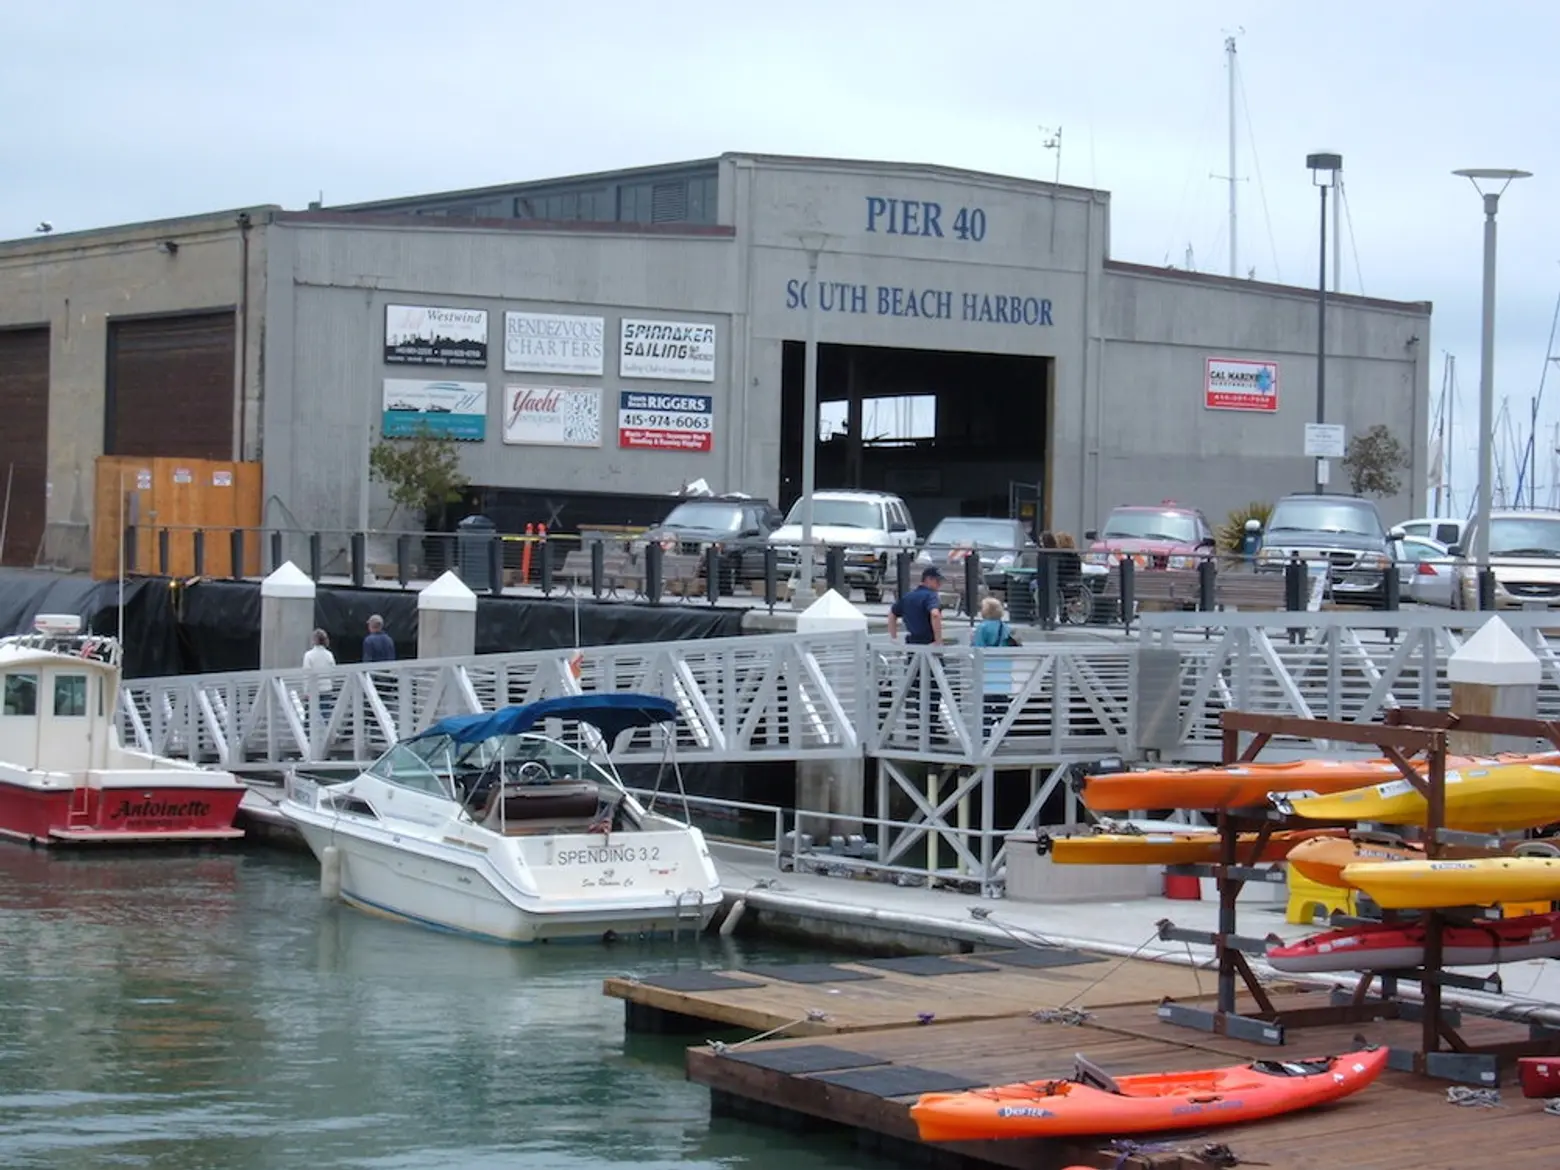 Has Governor Cuomo Found a Way to Fix Pier 40?